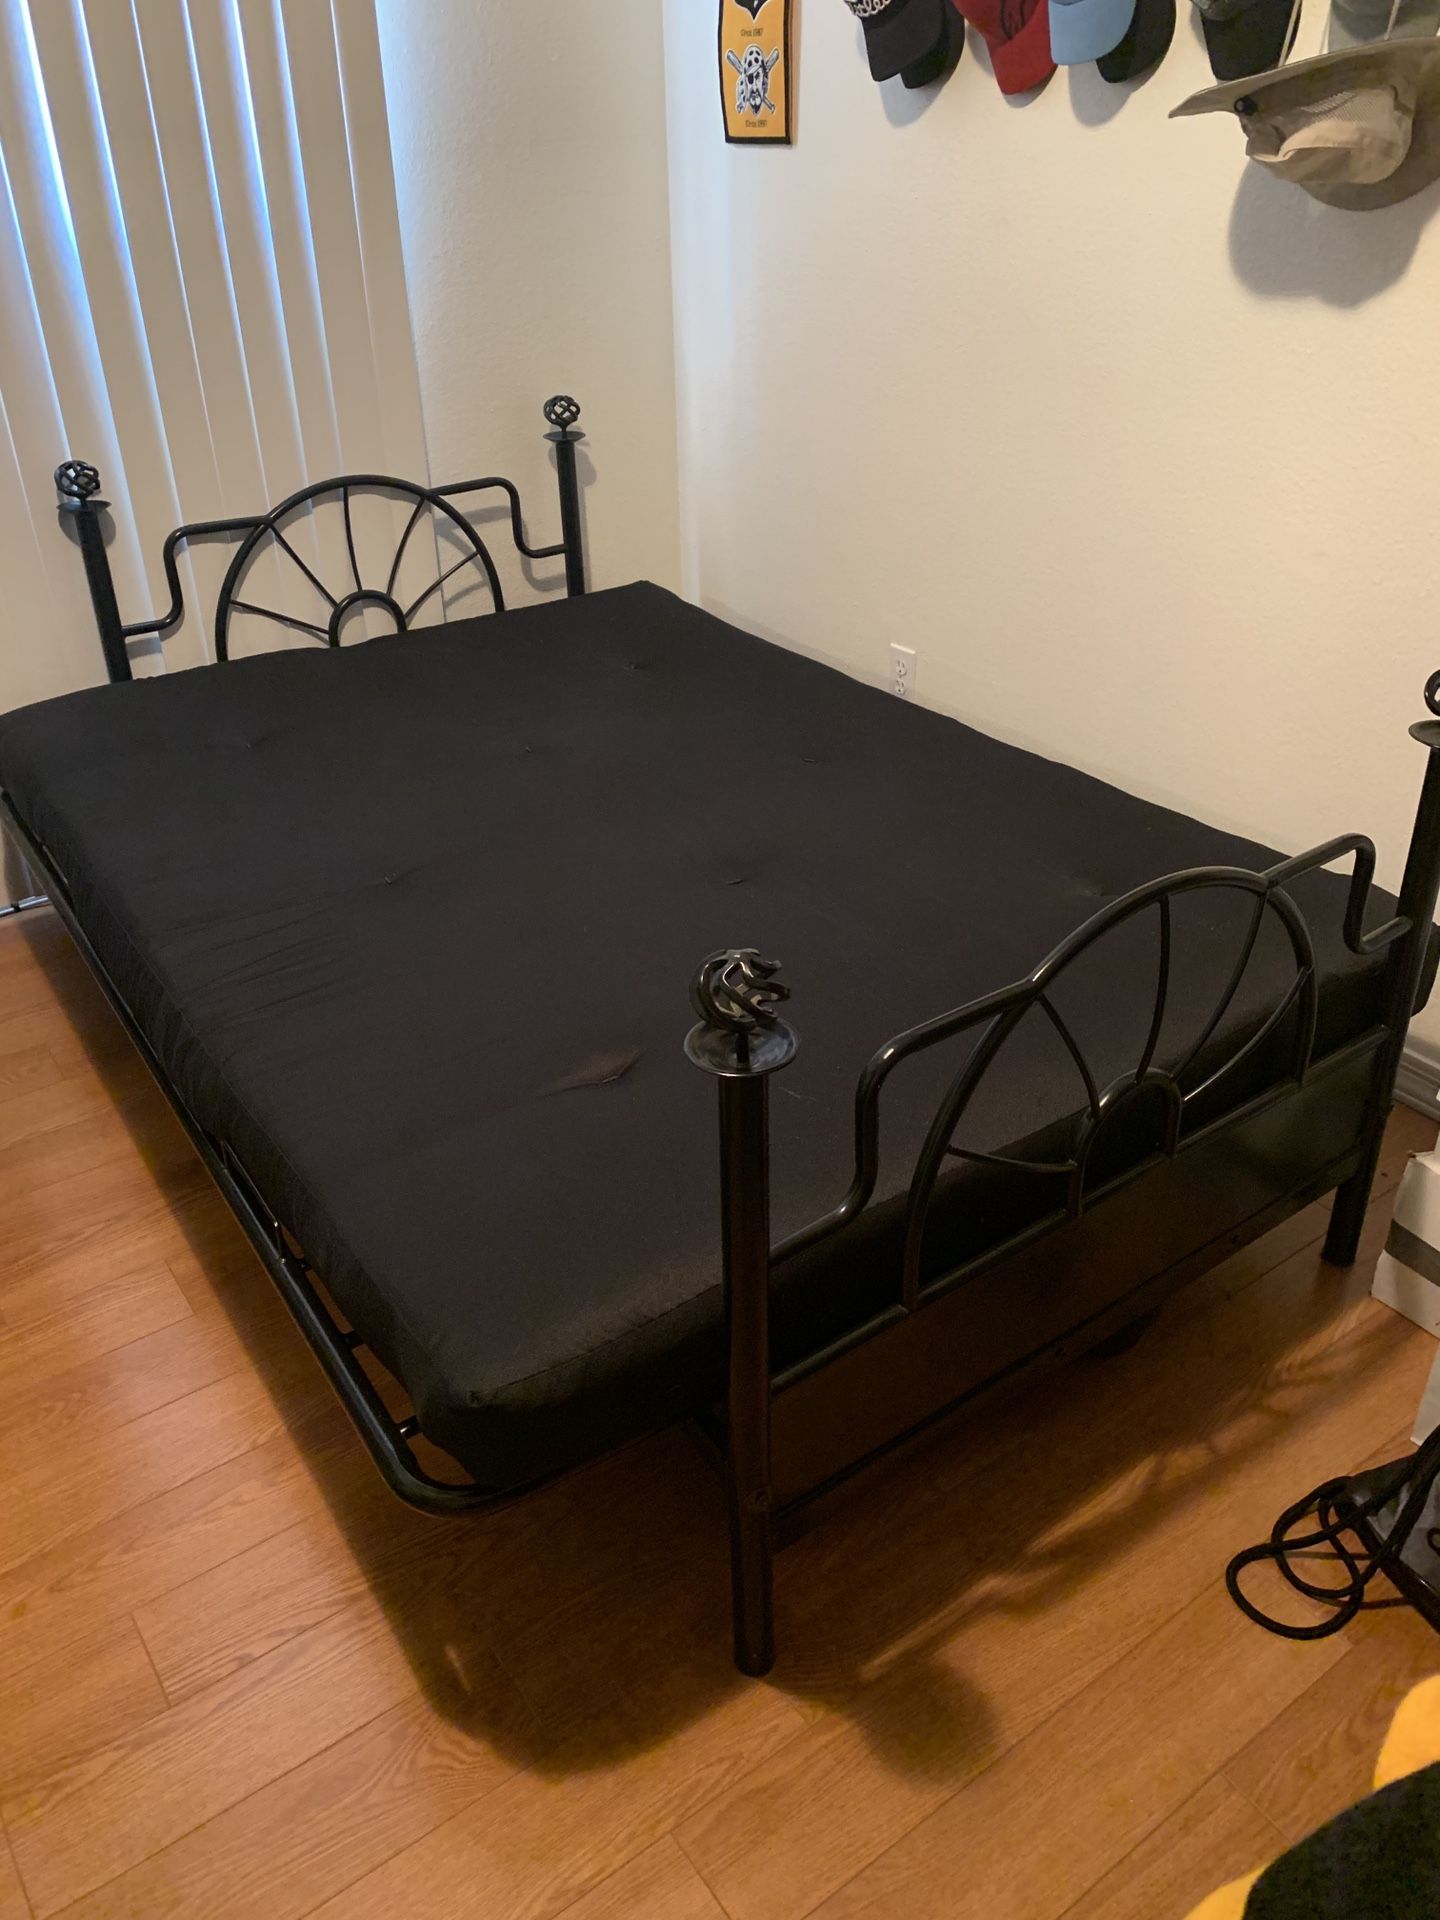 Black metal futon with queen size mattress